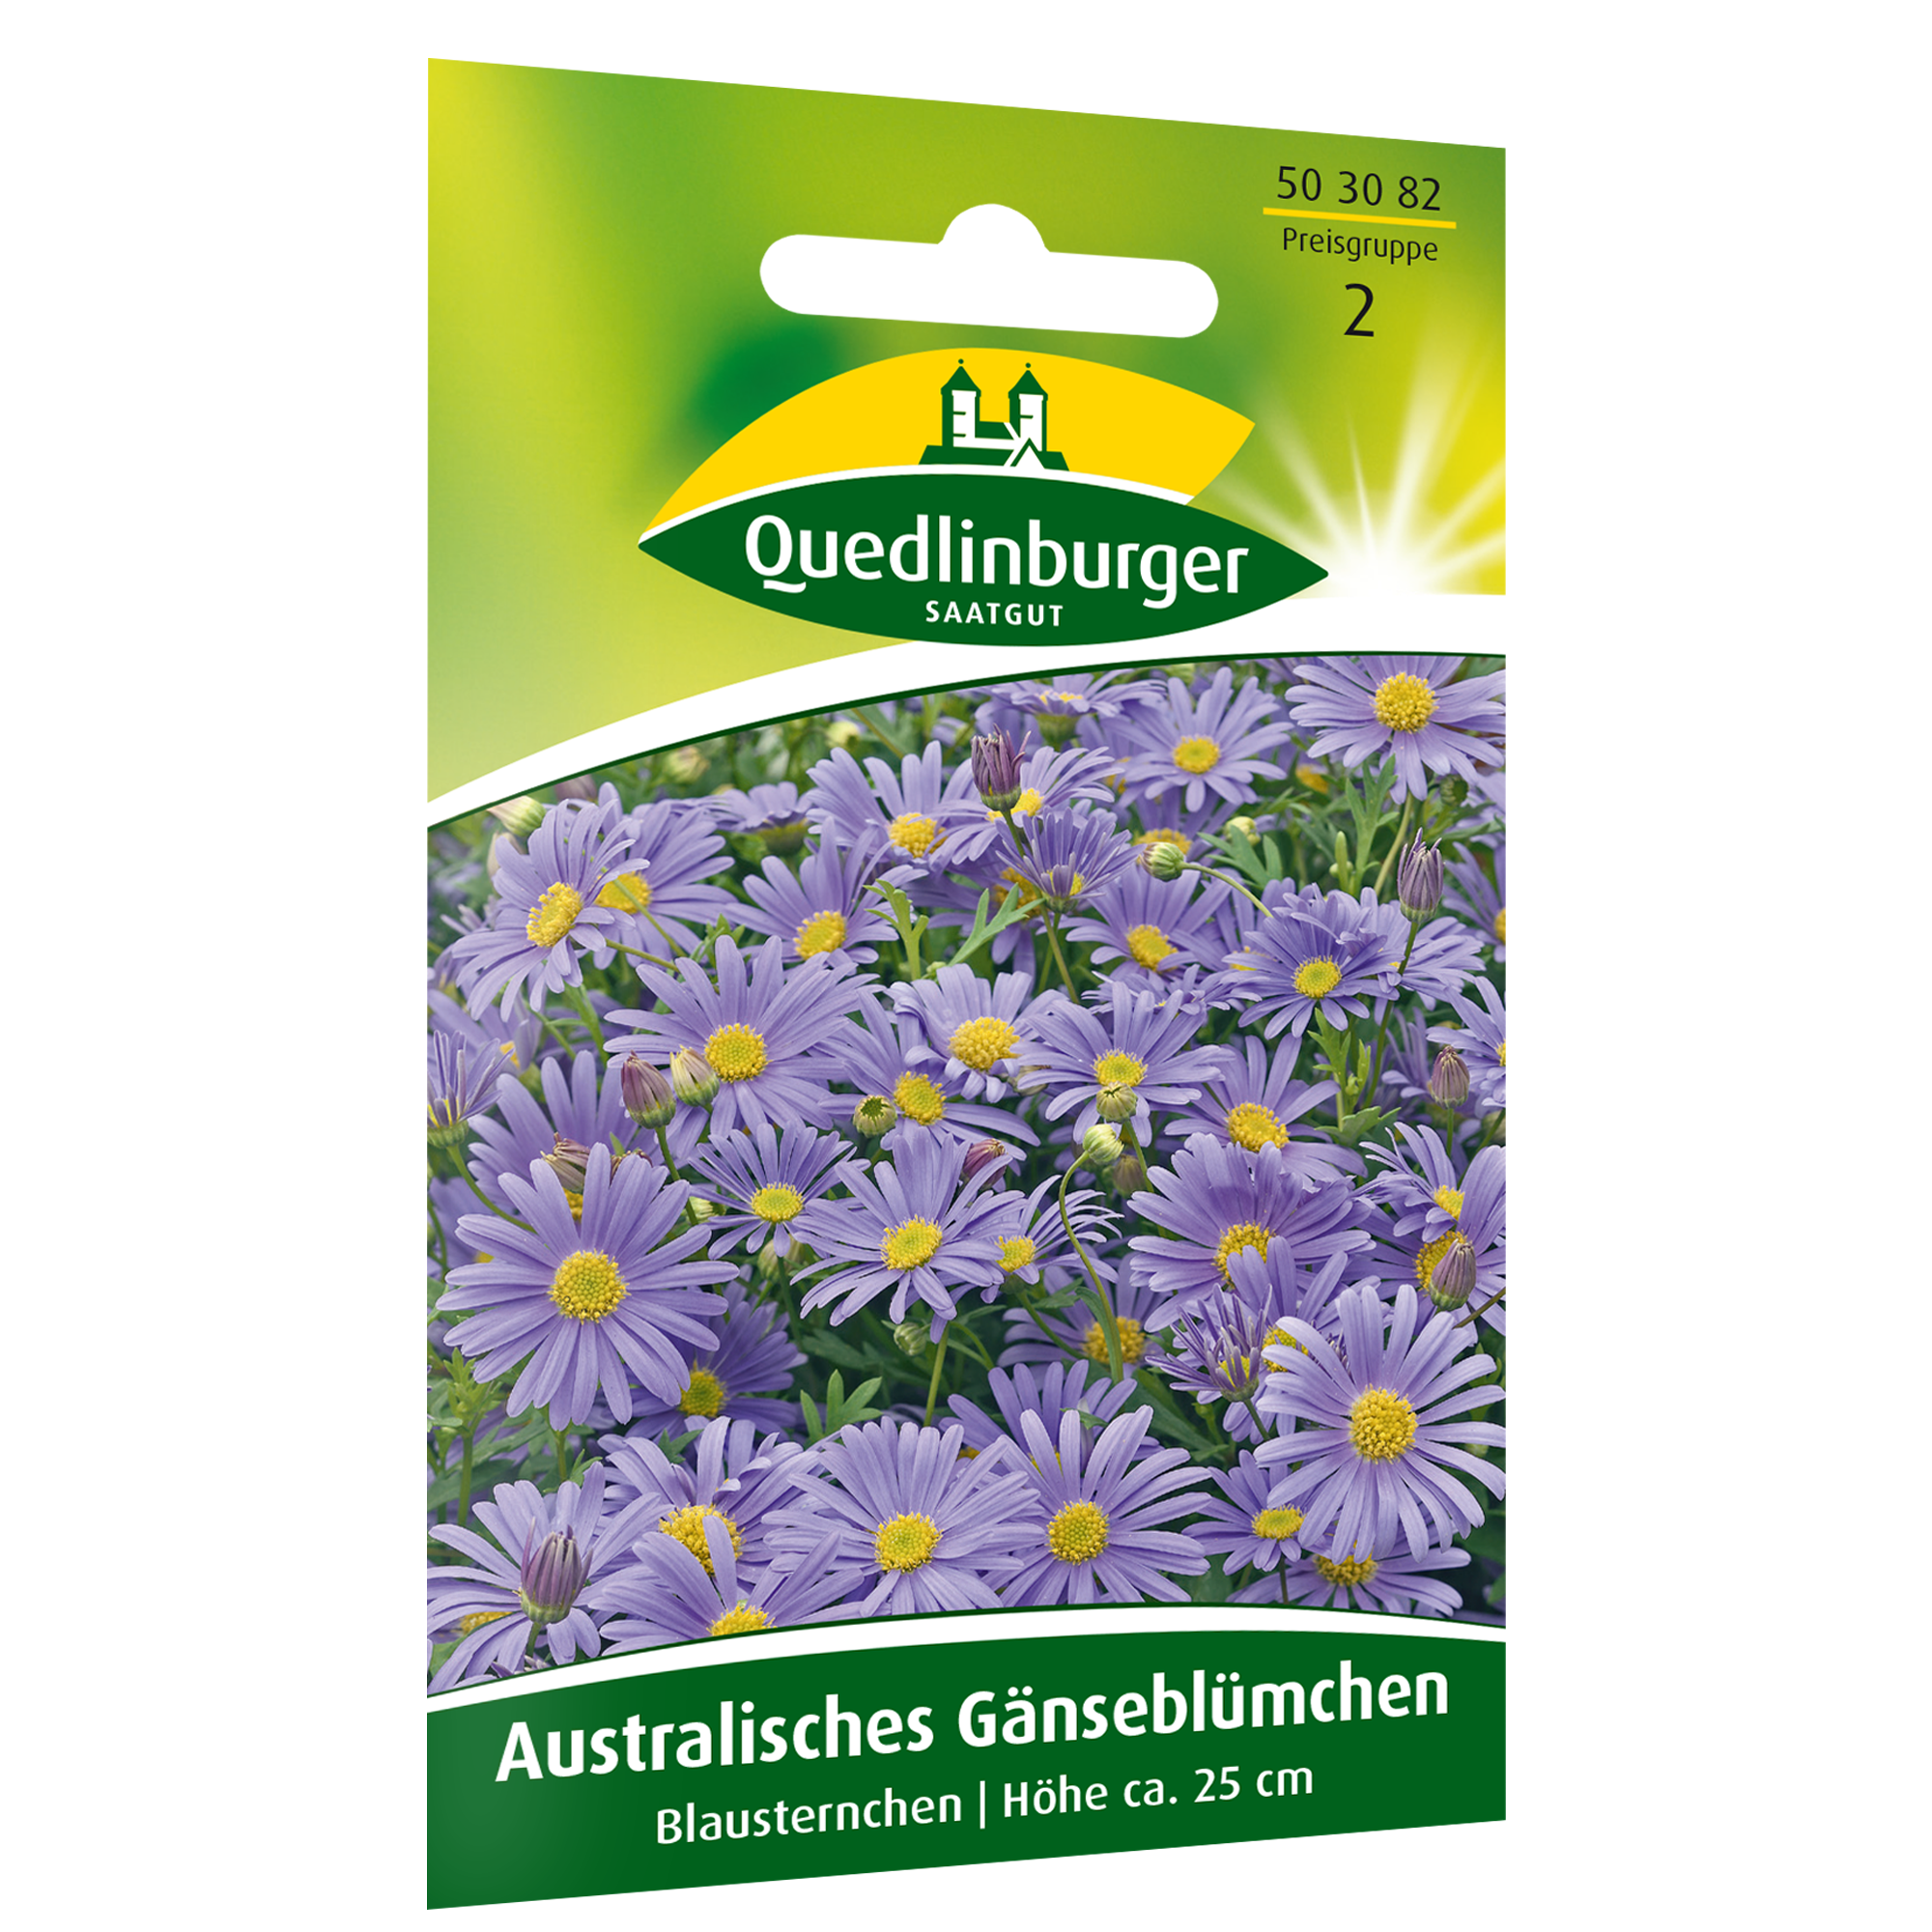 Australisches Gänseblümchen 'Blausternchen' + product picture